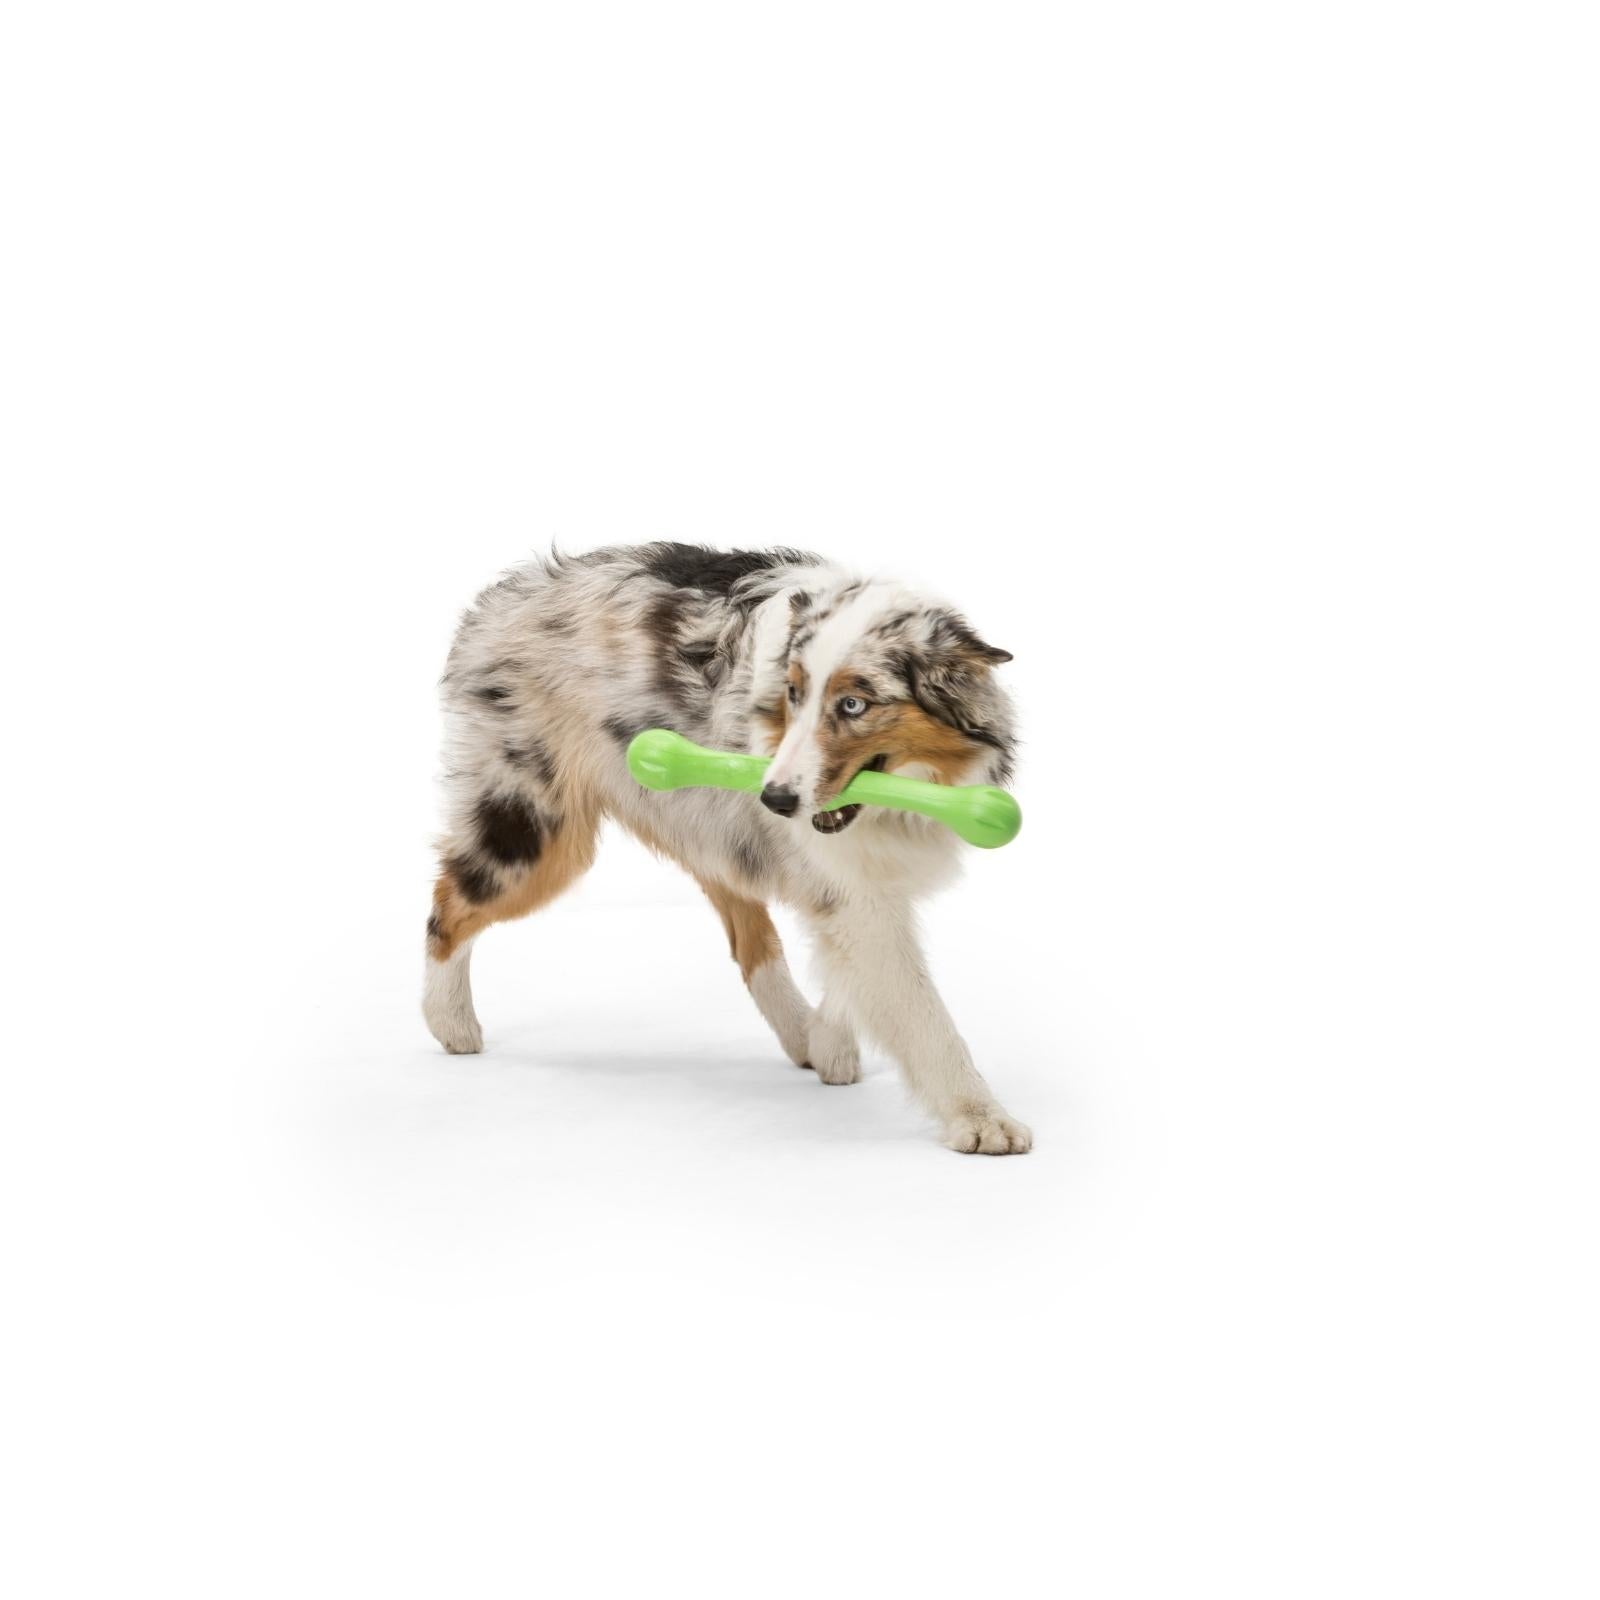 ZWIG de West Paw® color Verde - Rama Suave de Juguete para Perros